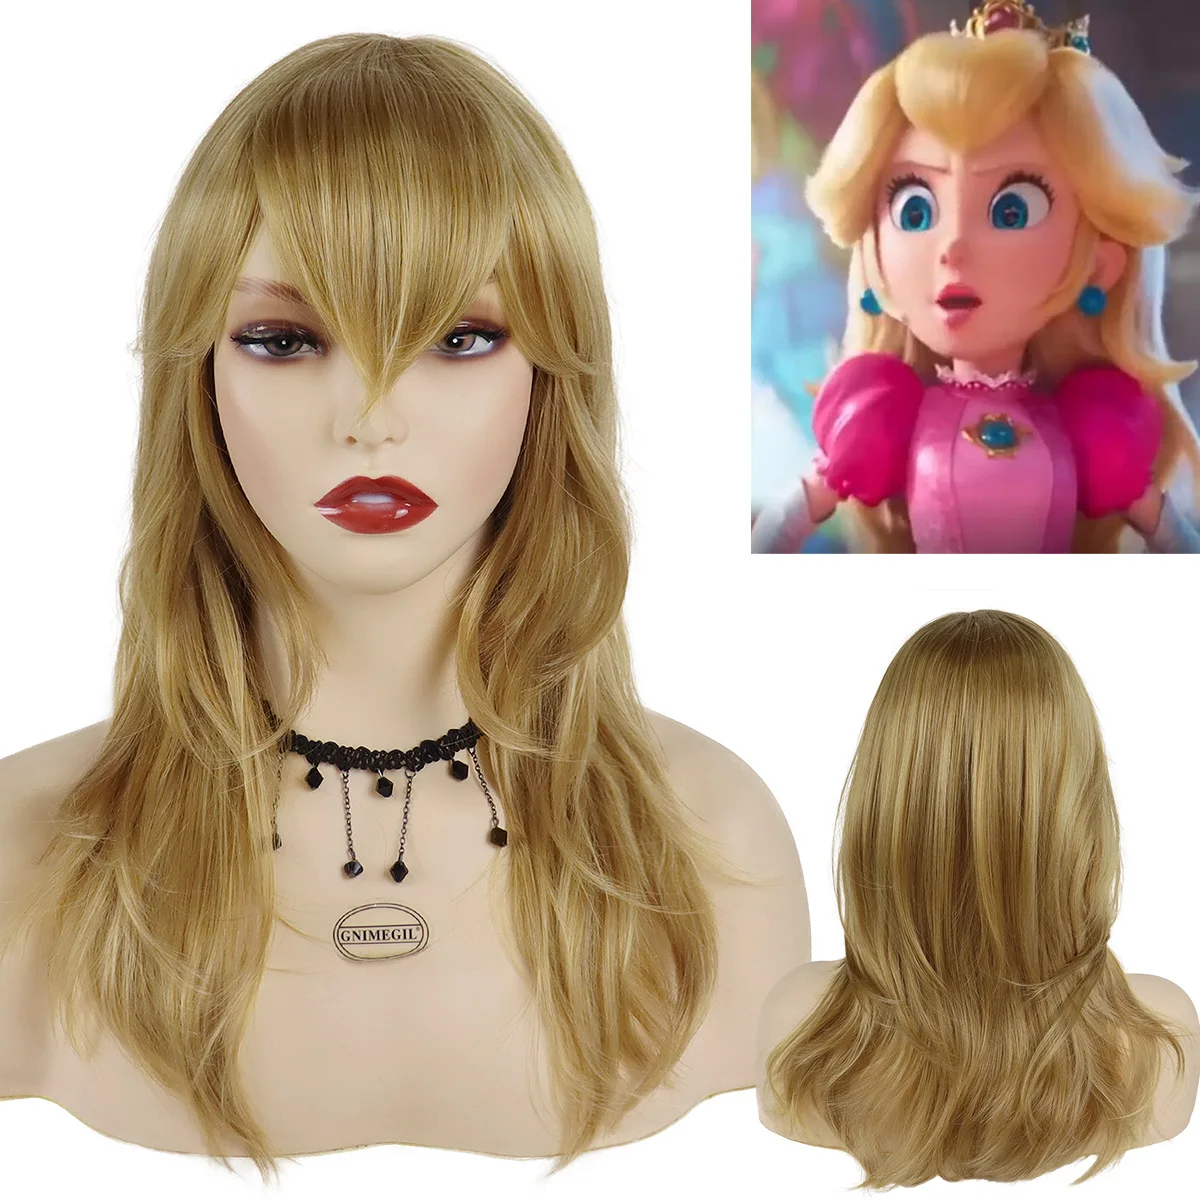 

Синтетический длинный светлый парик GNIMEGIL с челкой, парики для костюма принцессы персикового цвета для девочек, натуральные здоровые парики для косплея на Хэллоуин, для женщин